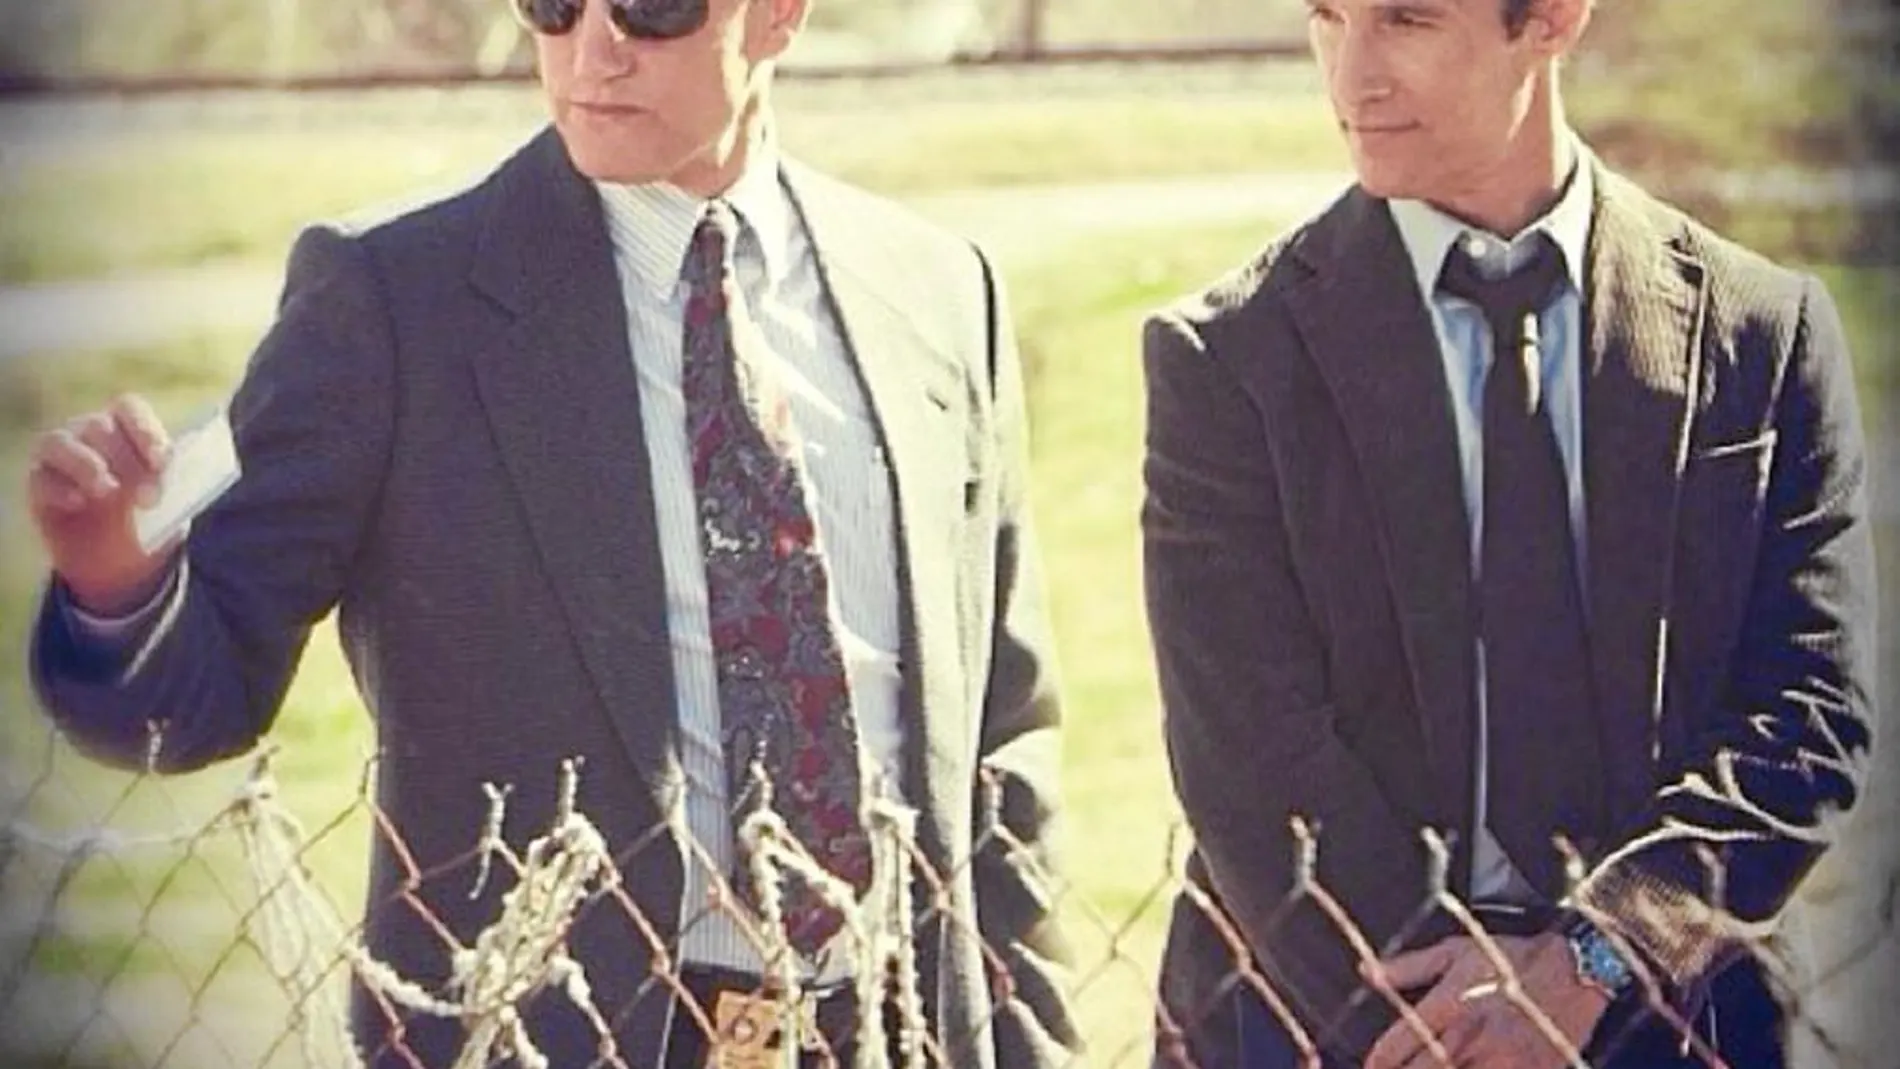 Harrelson y McConaughey protagonizarán «True Detective» en HBO a partir de enero